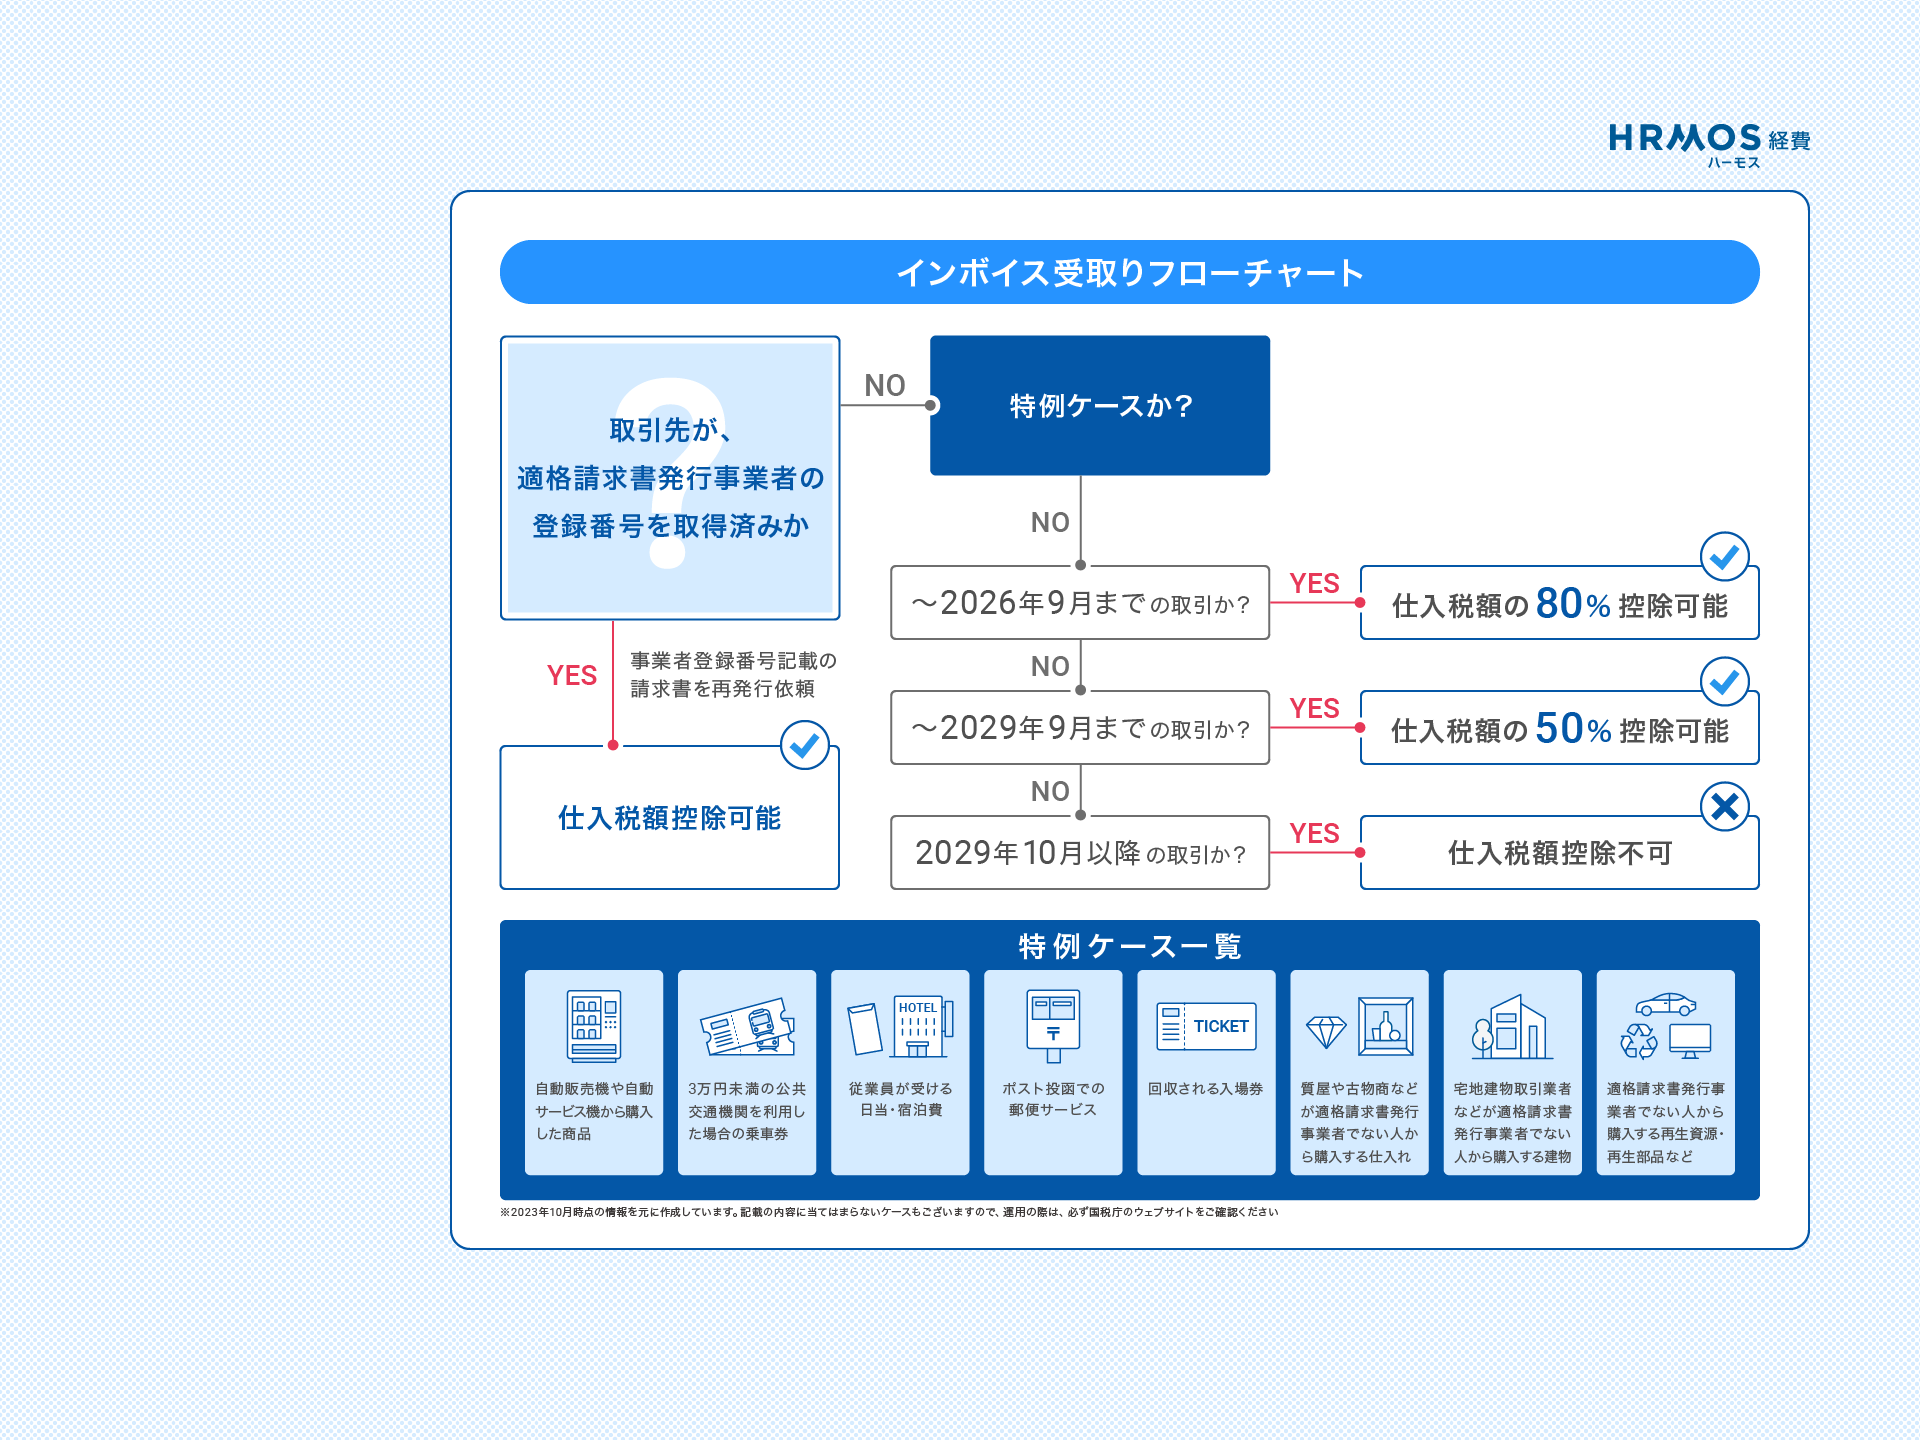 HRMOS経費インボイス受取フローチャート